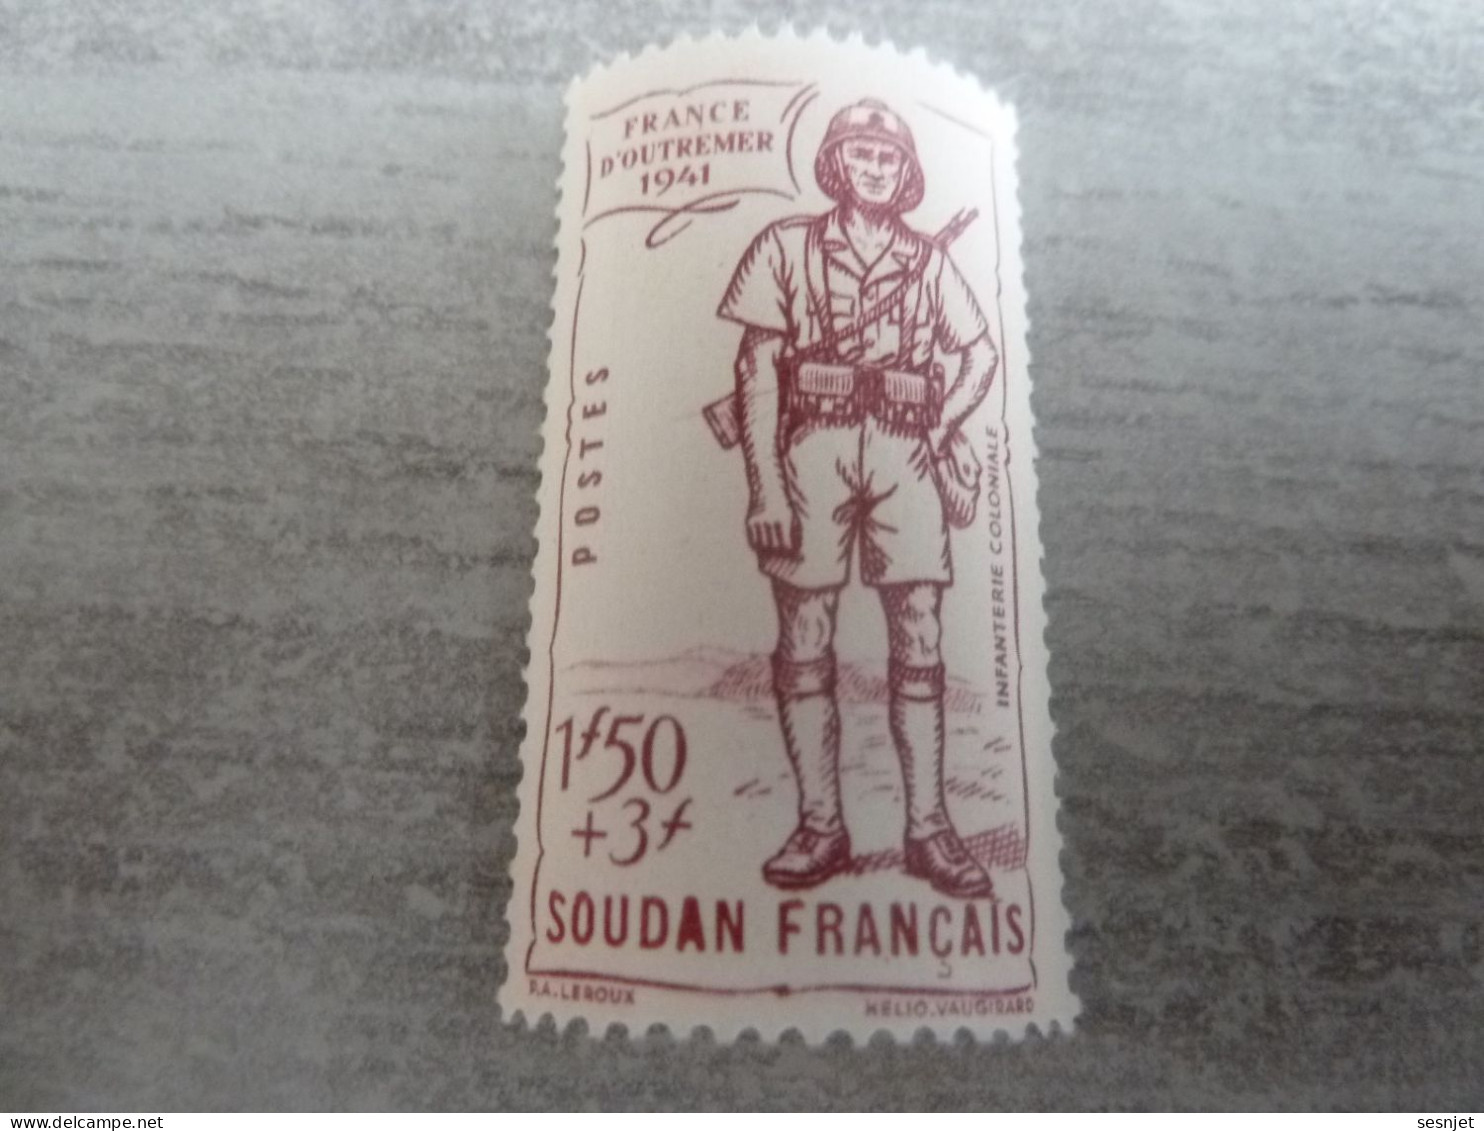 Soudan - Défense De L'Empire - Infanterie Coloniale - 1f.50+3f. - Yt 123 - Lilas - Neuf Sans Trace - Année 1941 - - Ongebruikt